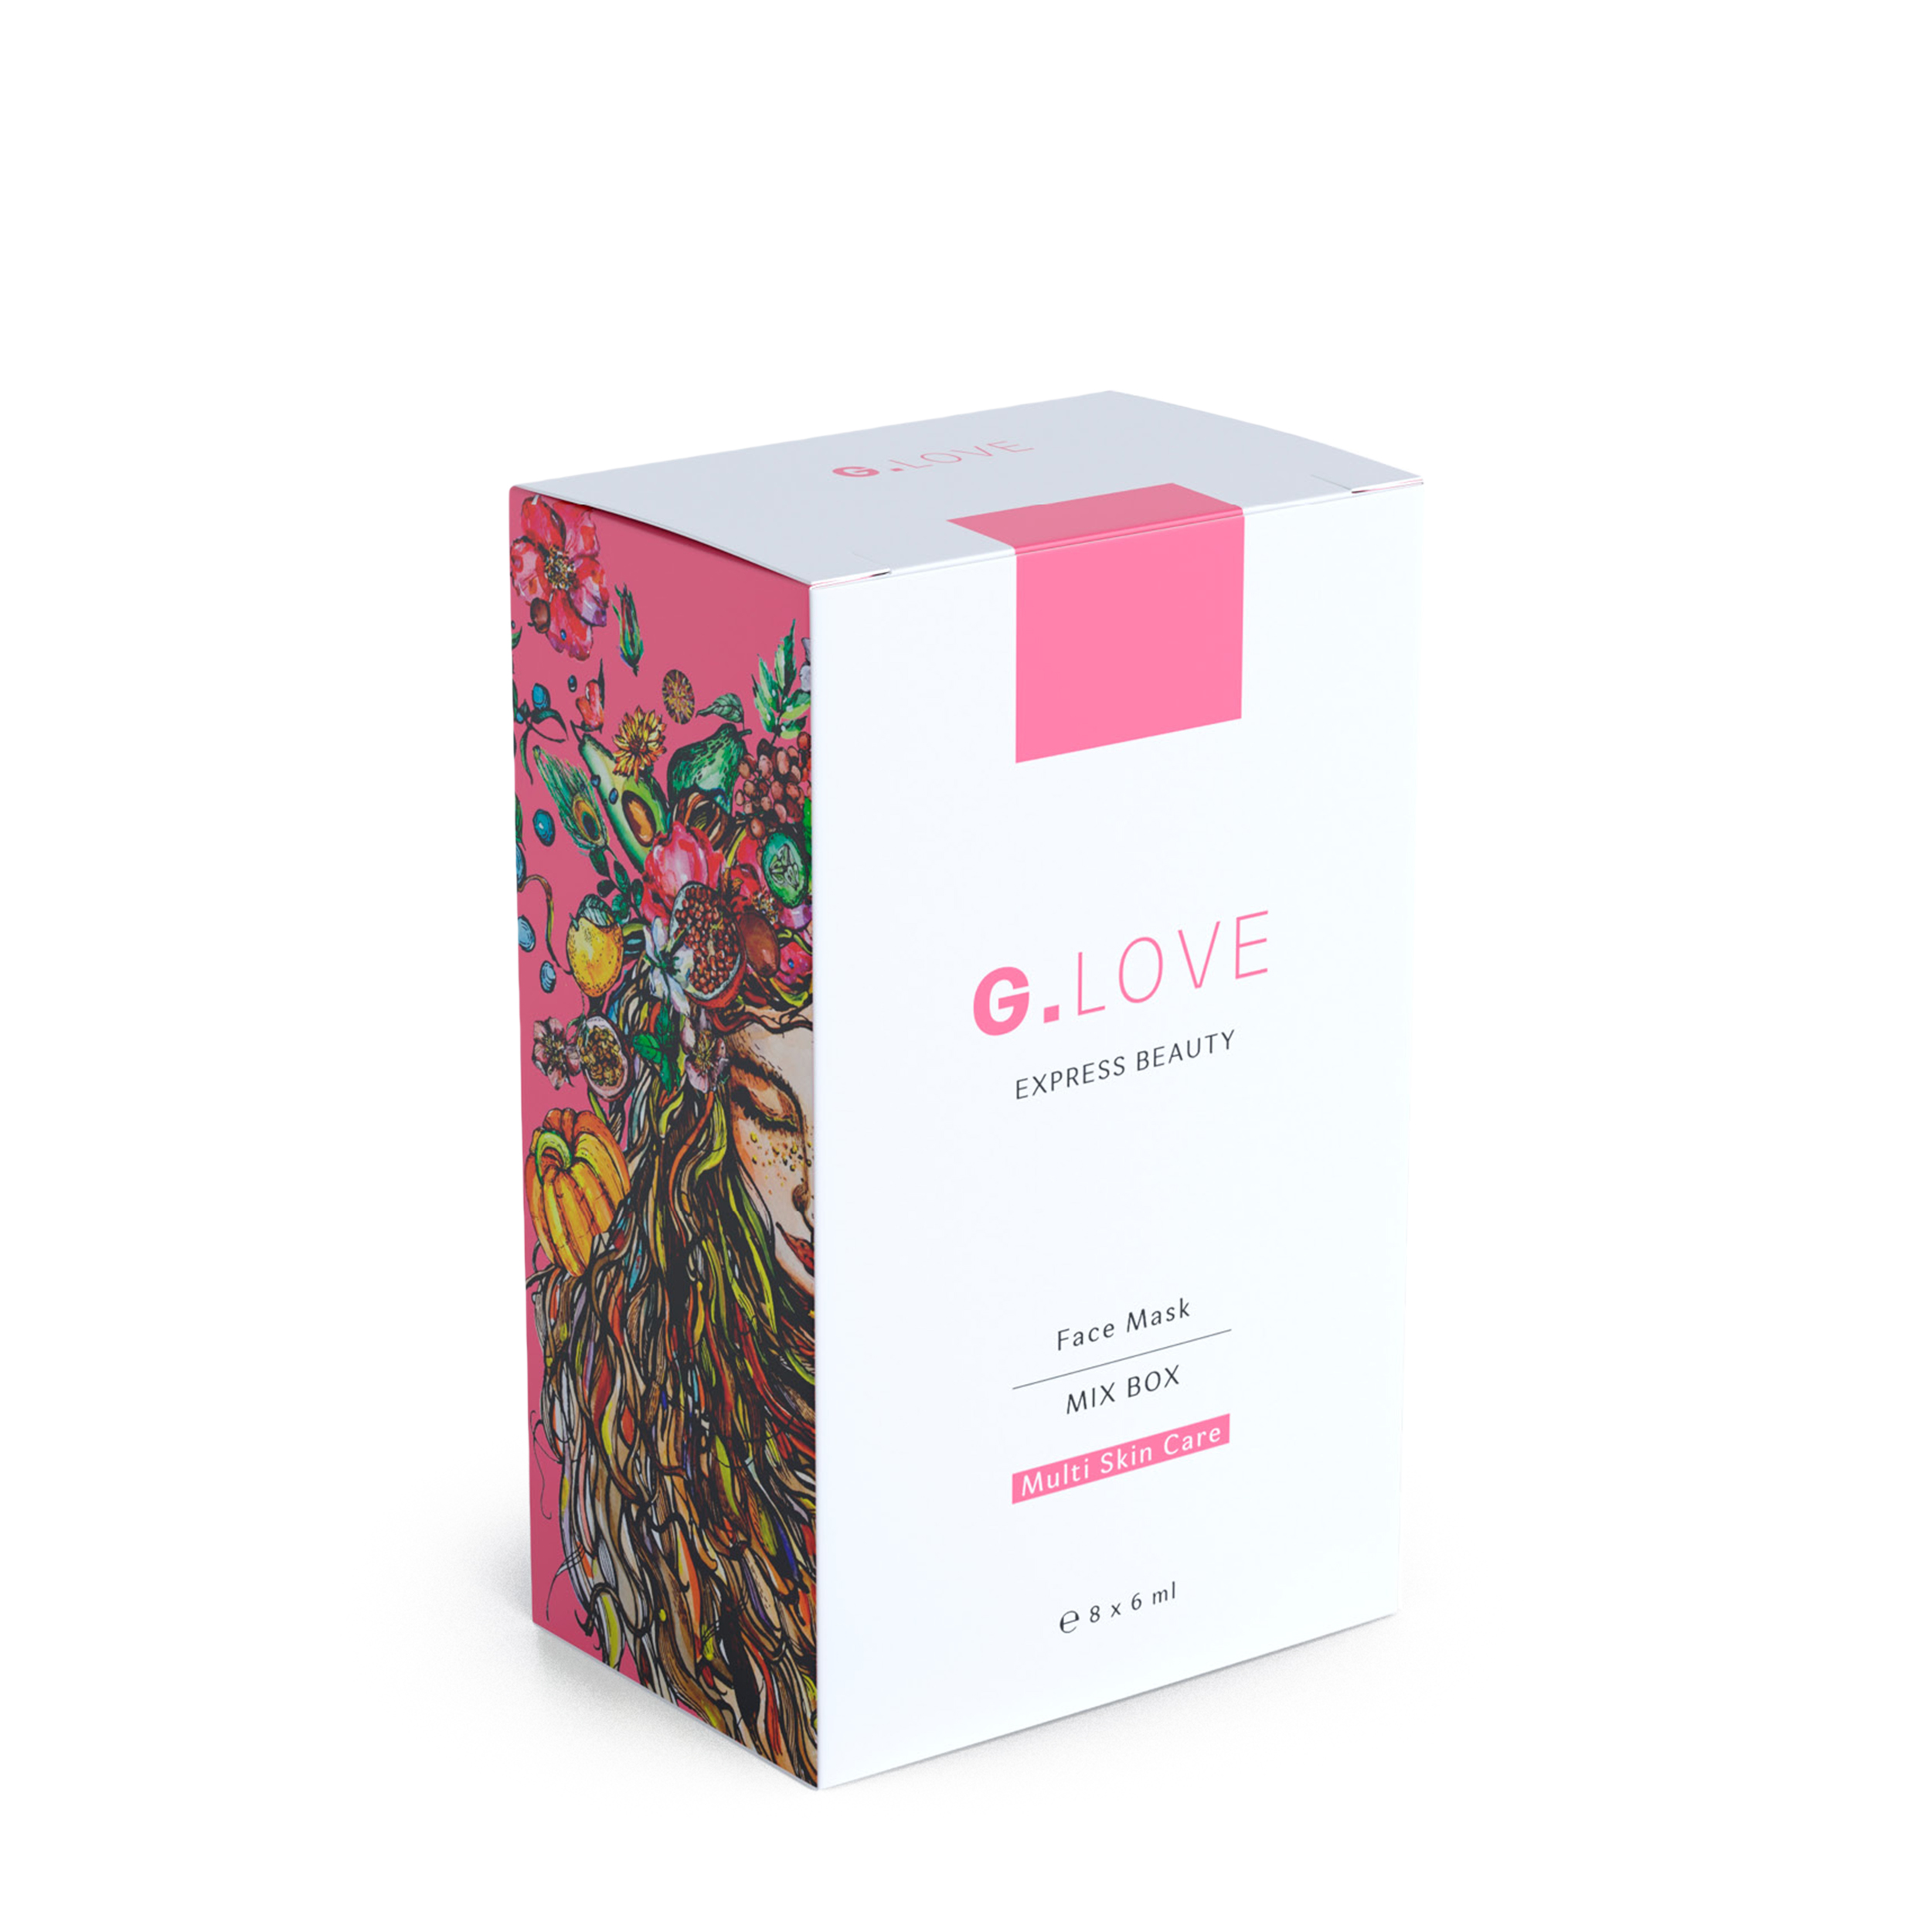 G.LOVE G.LOVE Набор масок для лица «Mix Box»  8x6 мл от Foambox